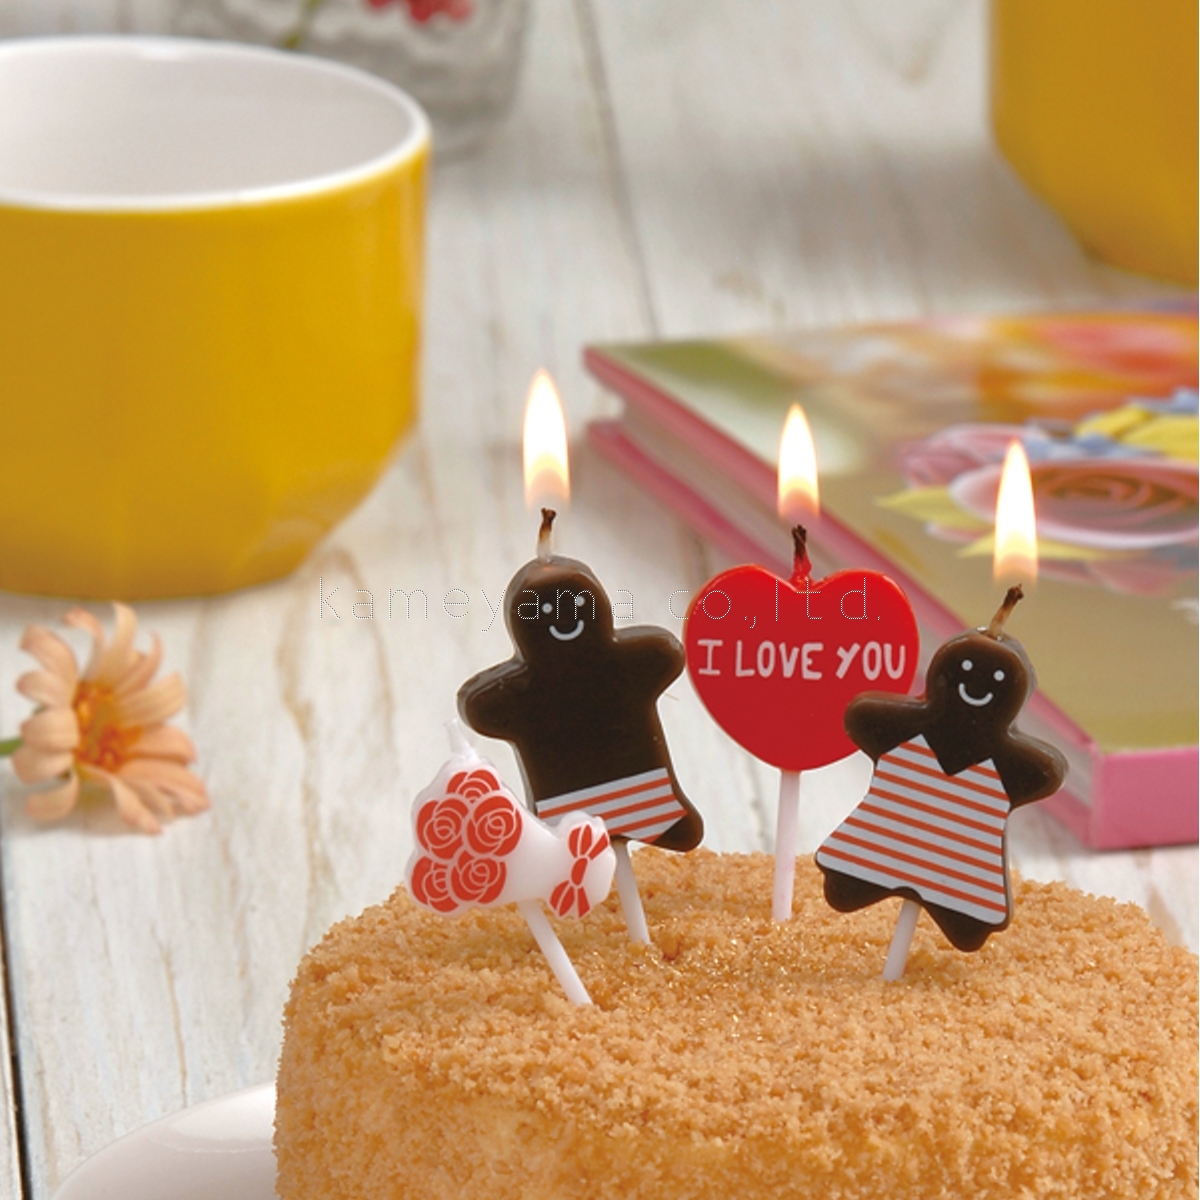 楽天市場 誕生日 バースデーケーキ カメヤマキャンドル アイラブユーキャンドル ギフトミニ かわいいキャンドル I Love You 誕生日ケーキのお店ケベック